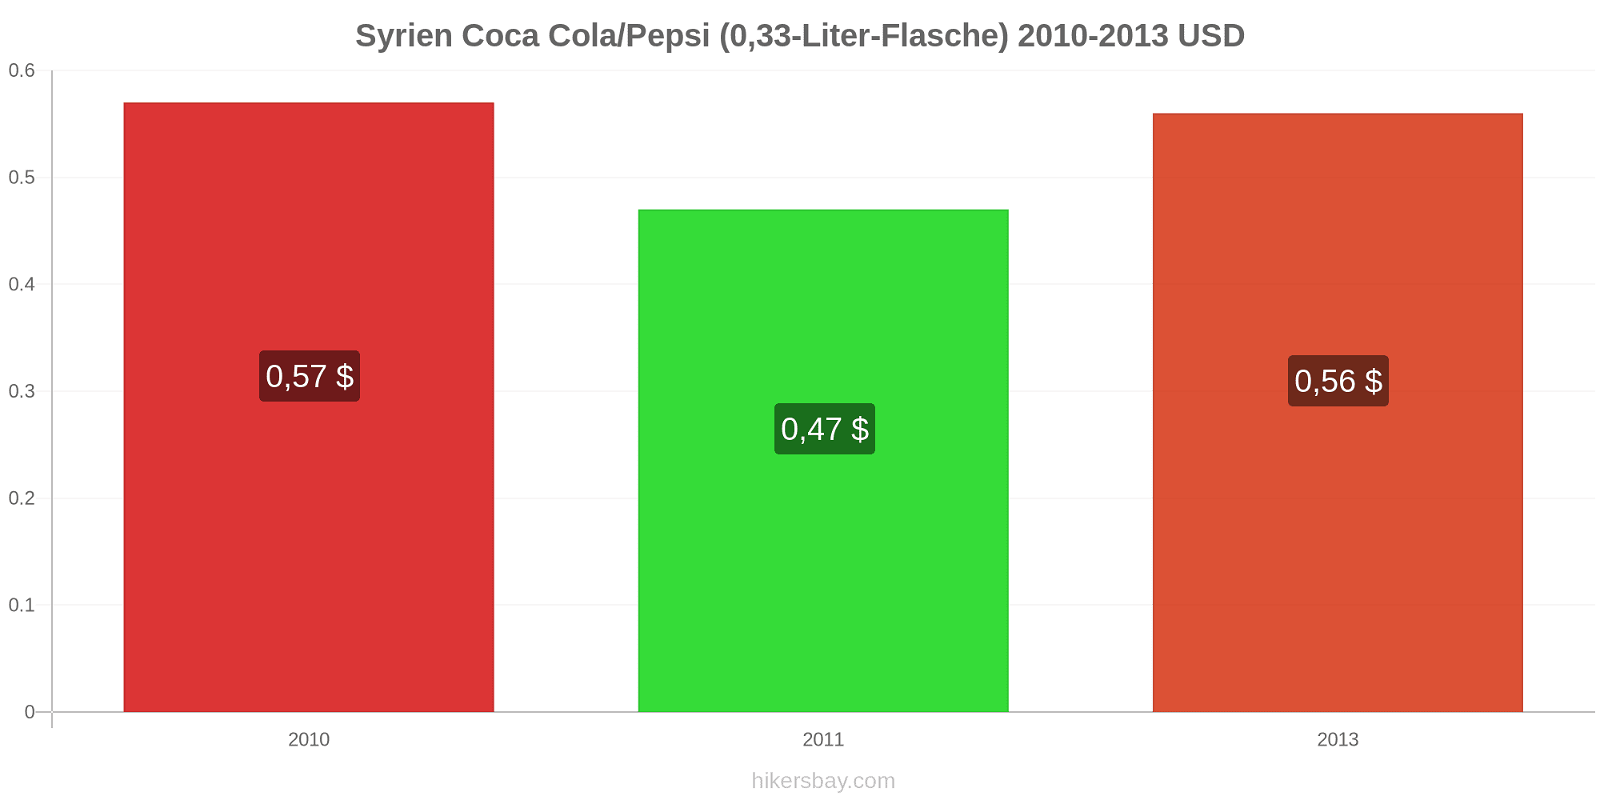 Syrien Preisänderungen Coke/Pepsi (0,33-Liter-Flasche) hikersbay.com